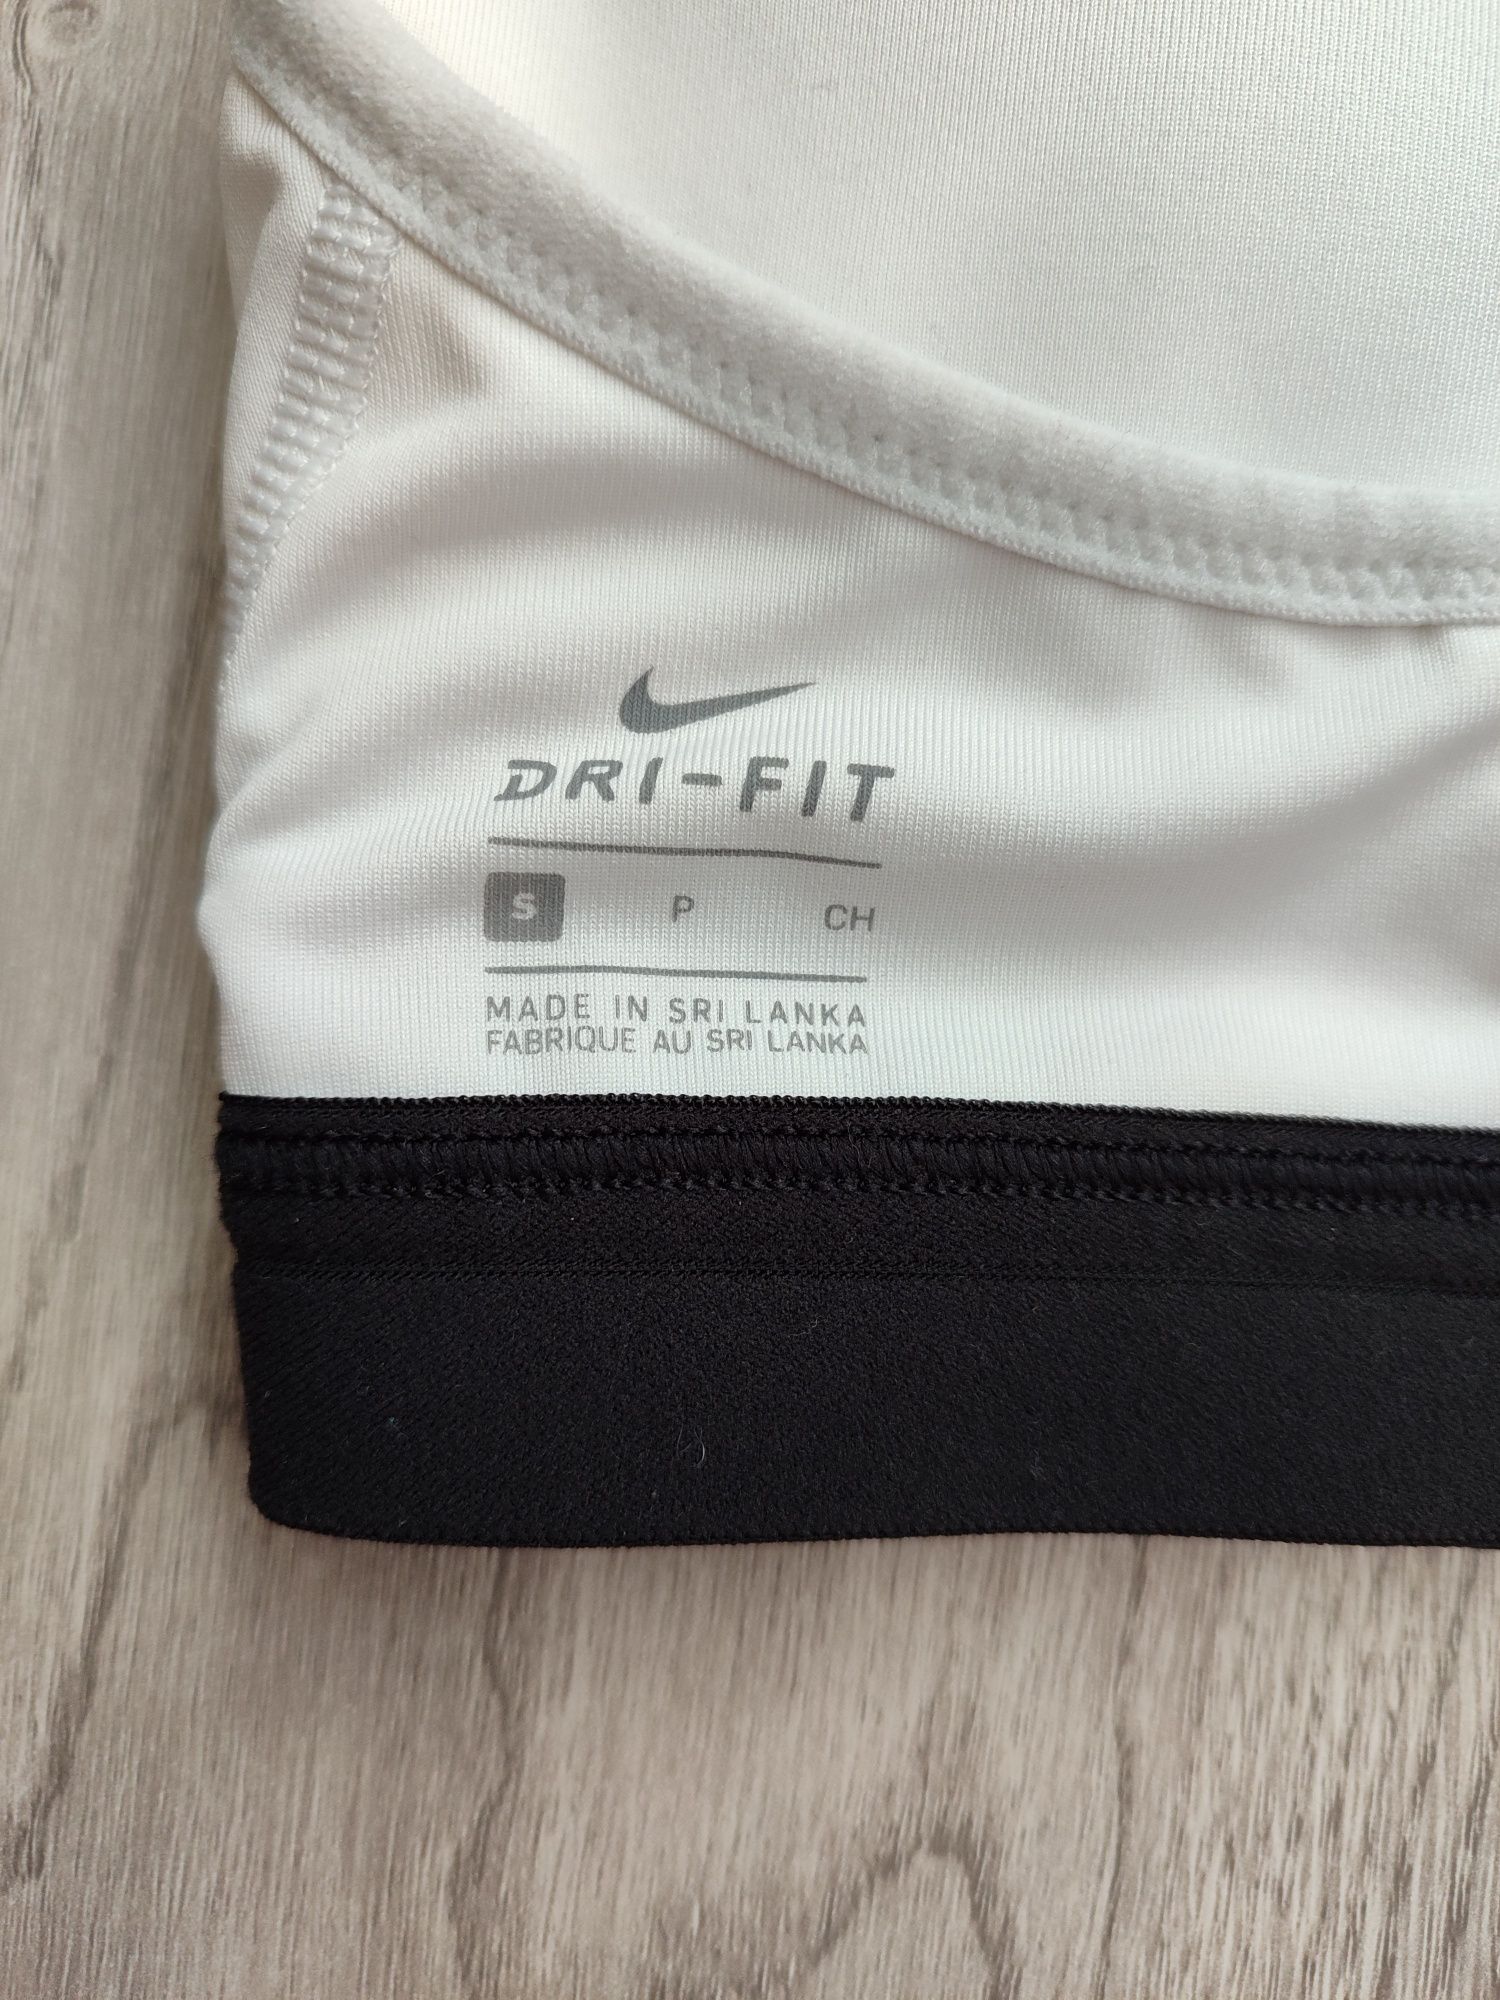 Спортивний топ Nike Dri -Fit  розмір S